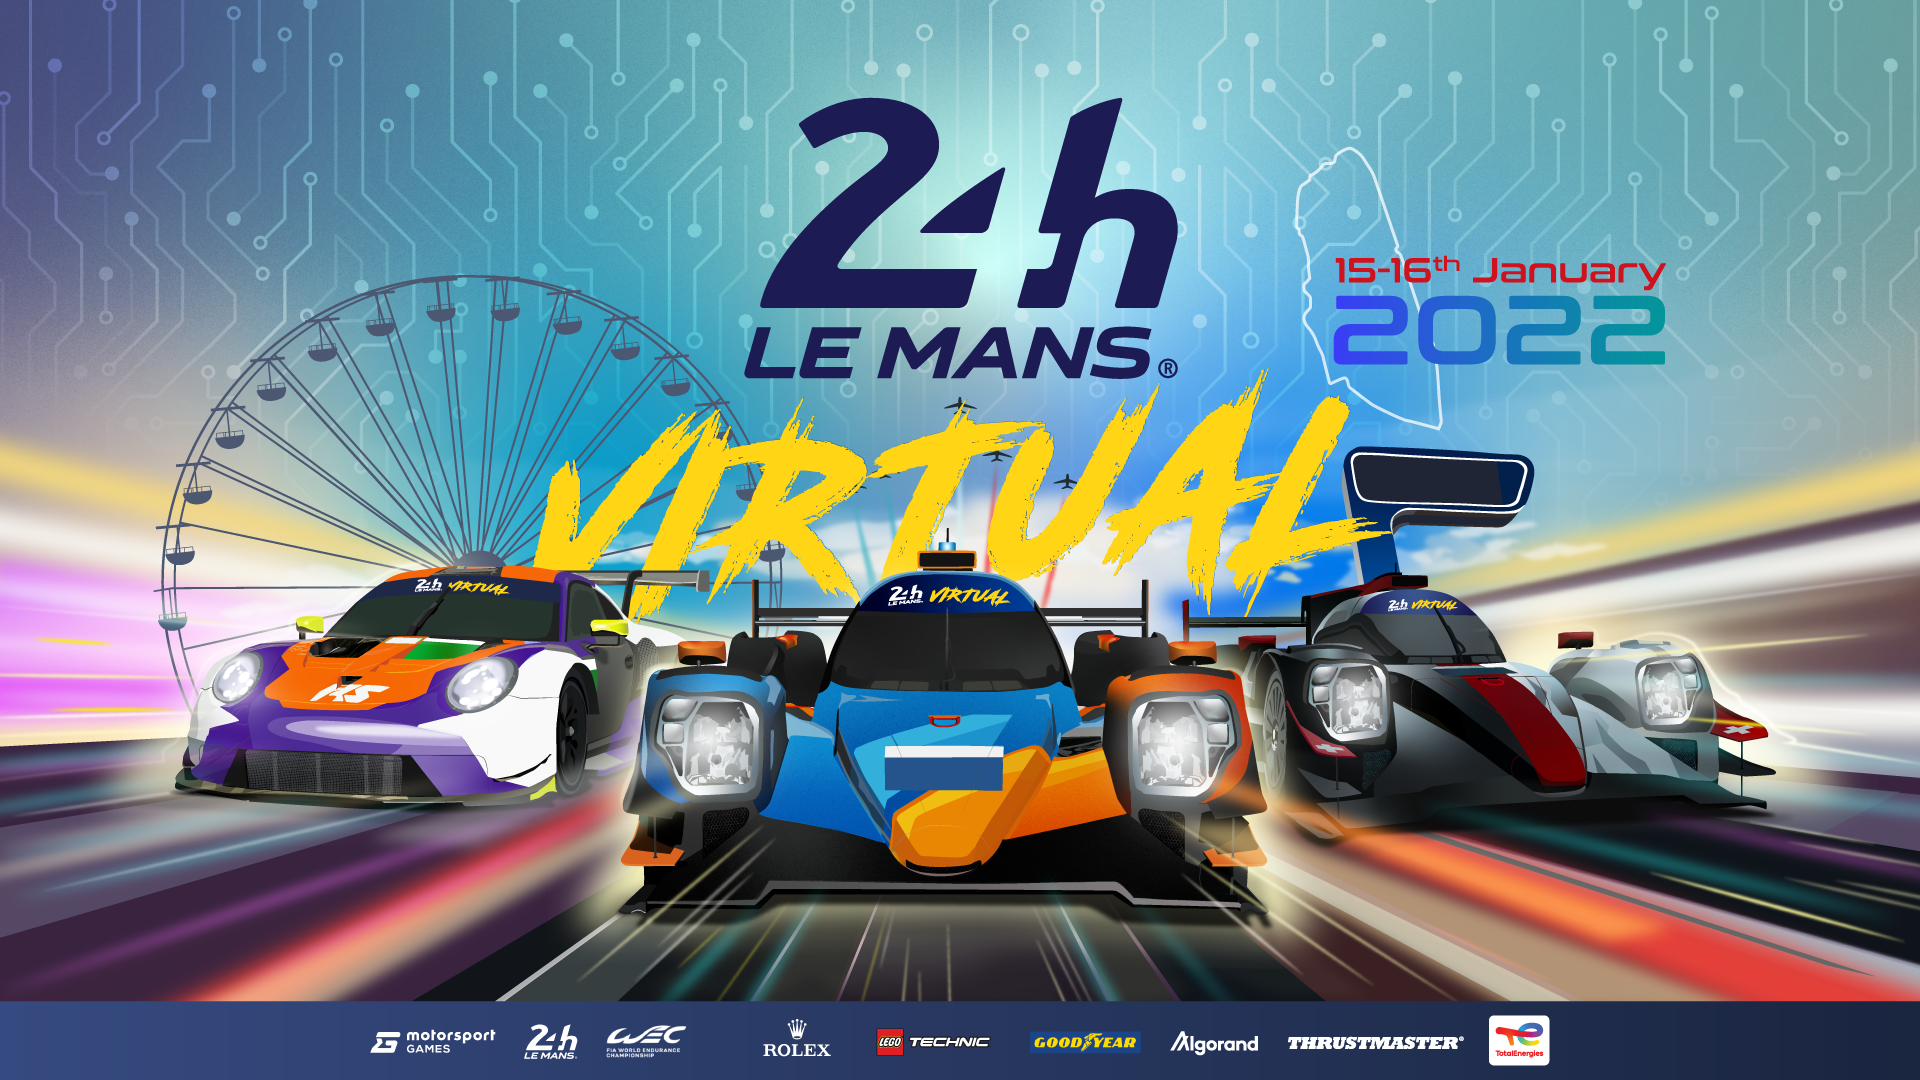 More information about "Le Mans Virtual Series: la 24 Hours of Le Mans Virtual il 15/16 Gennaio 2022"